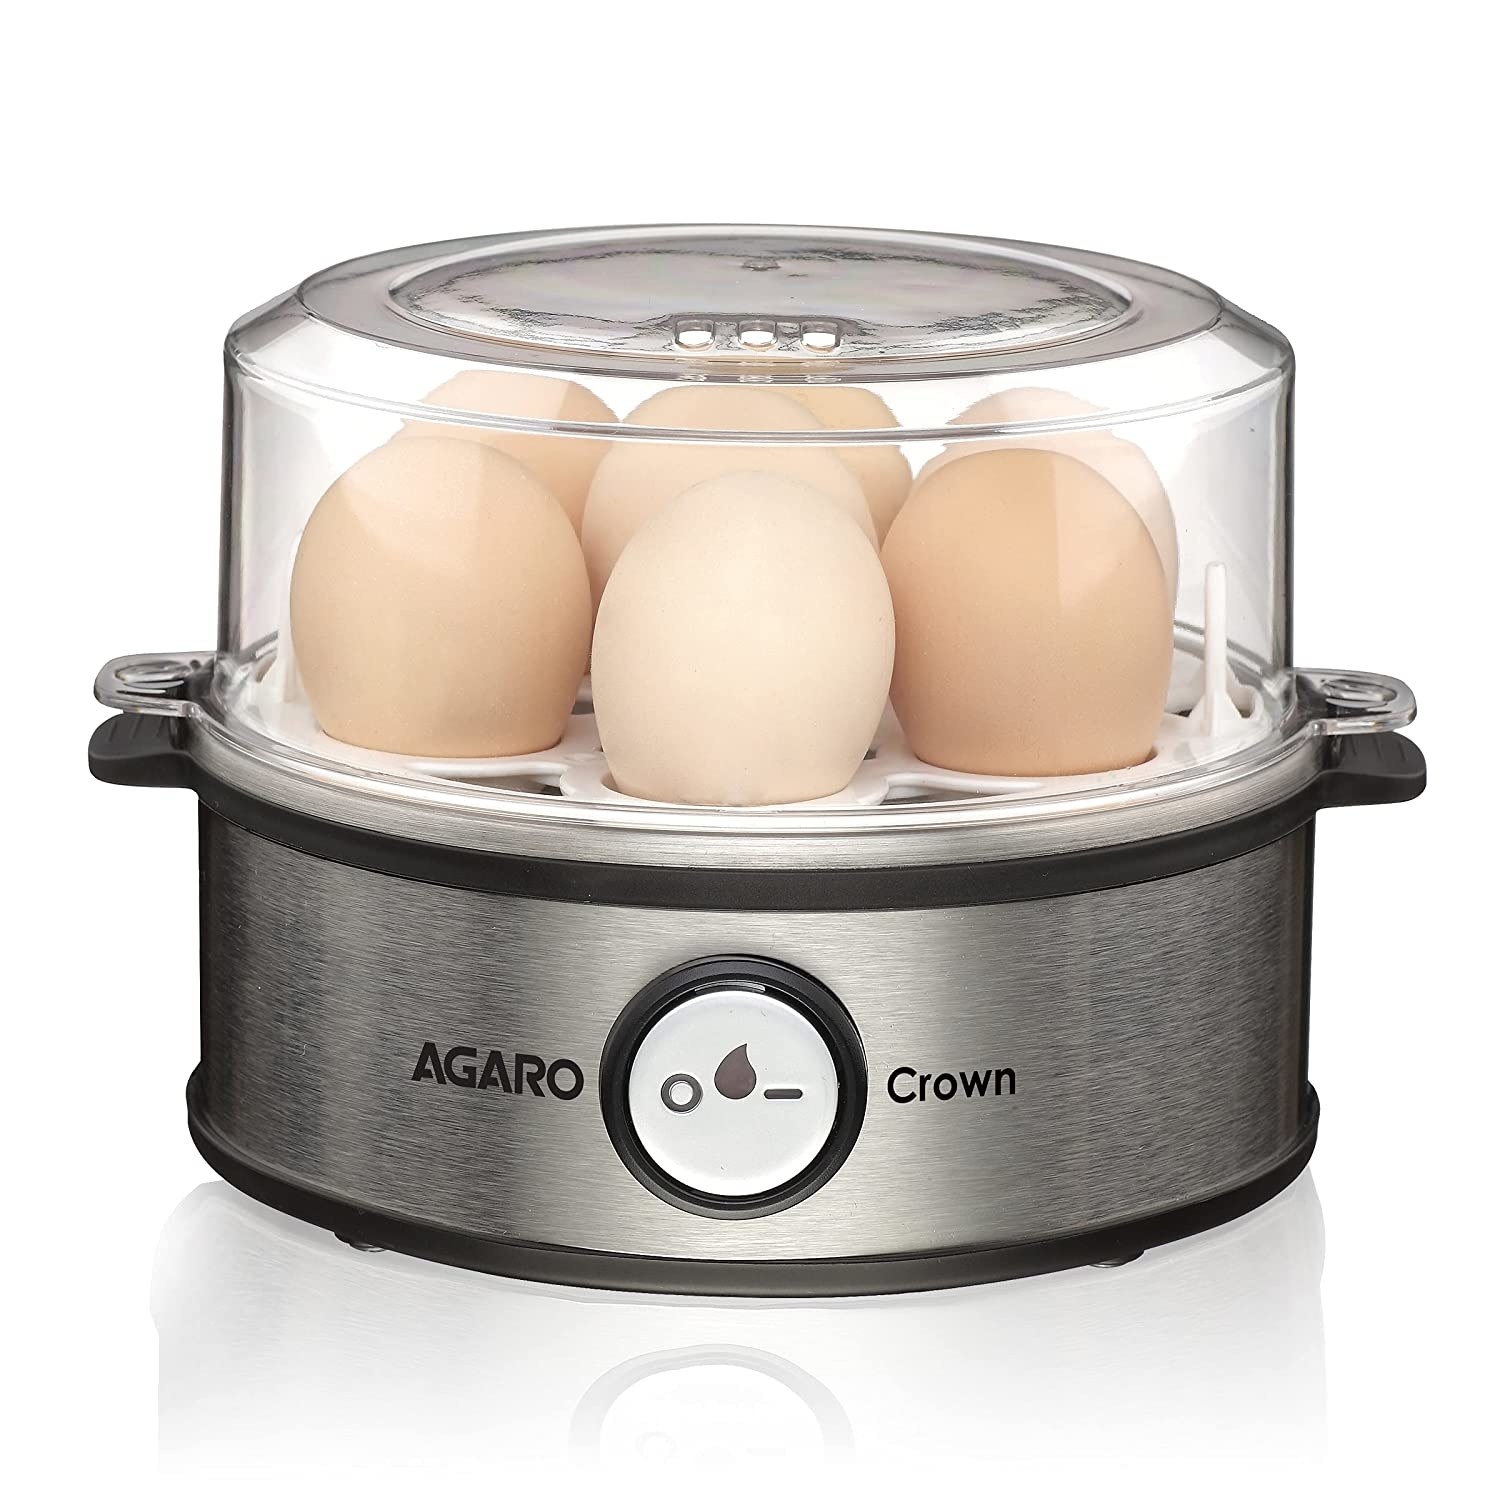 Agaro egg boiler with eggs inside